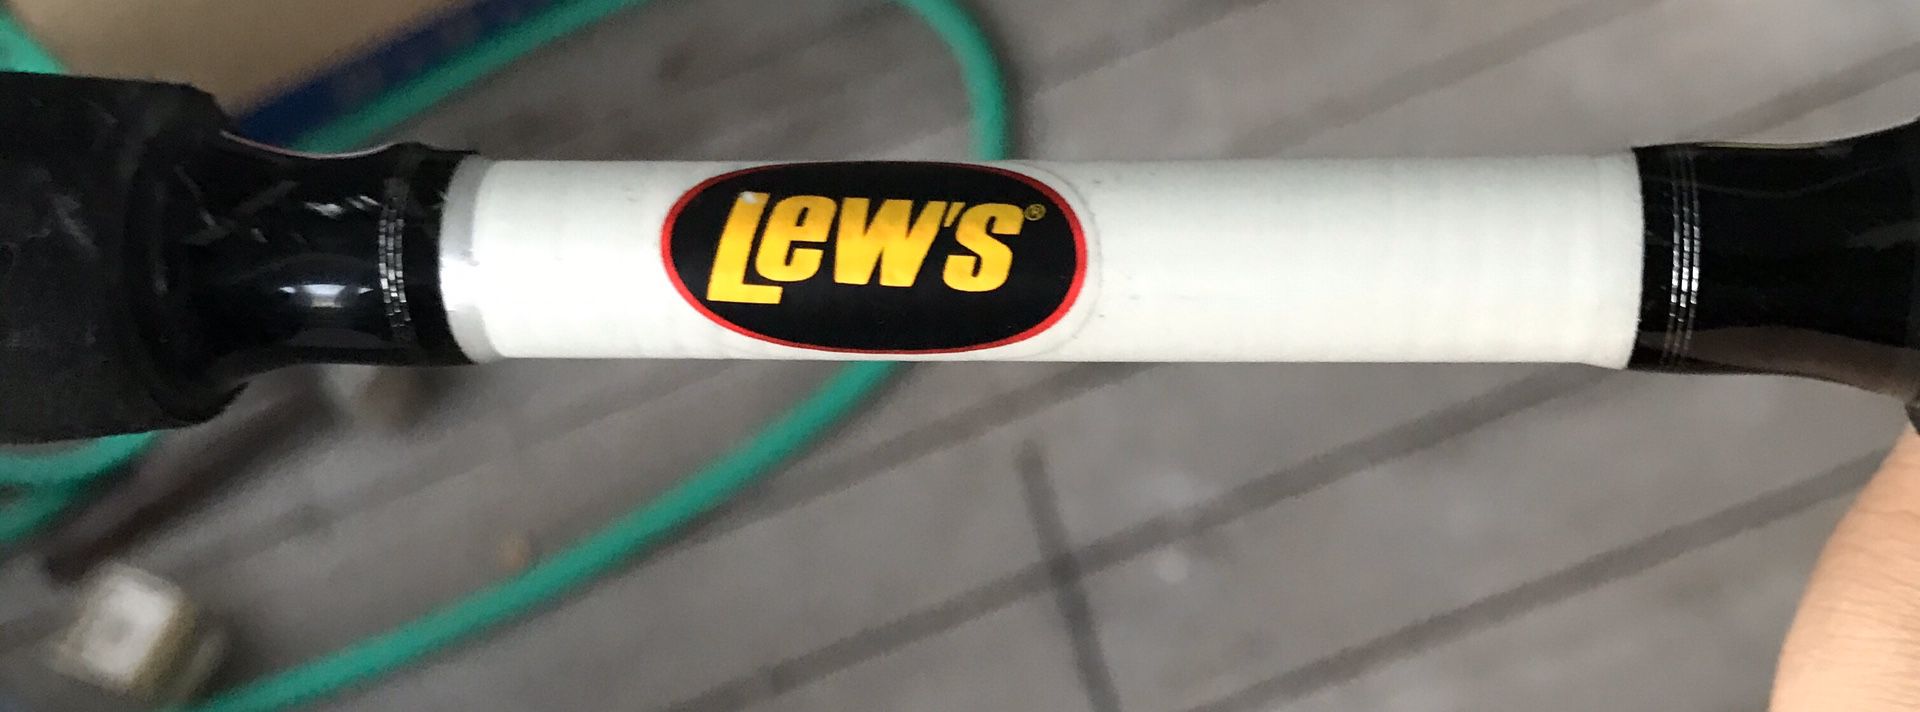 Lews American hero fishing rod and reel